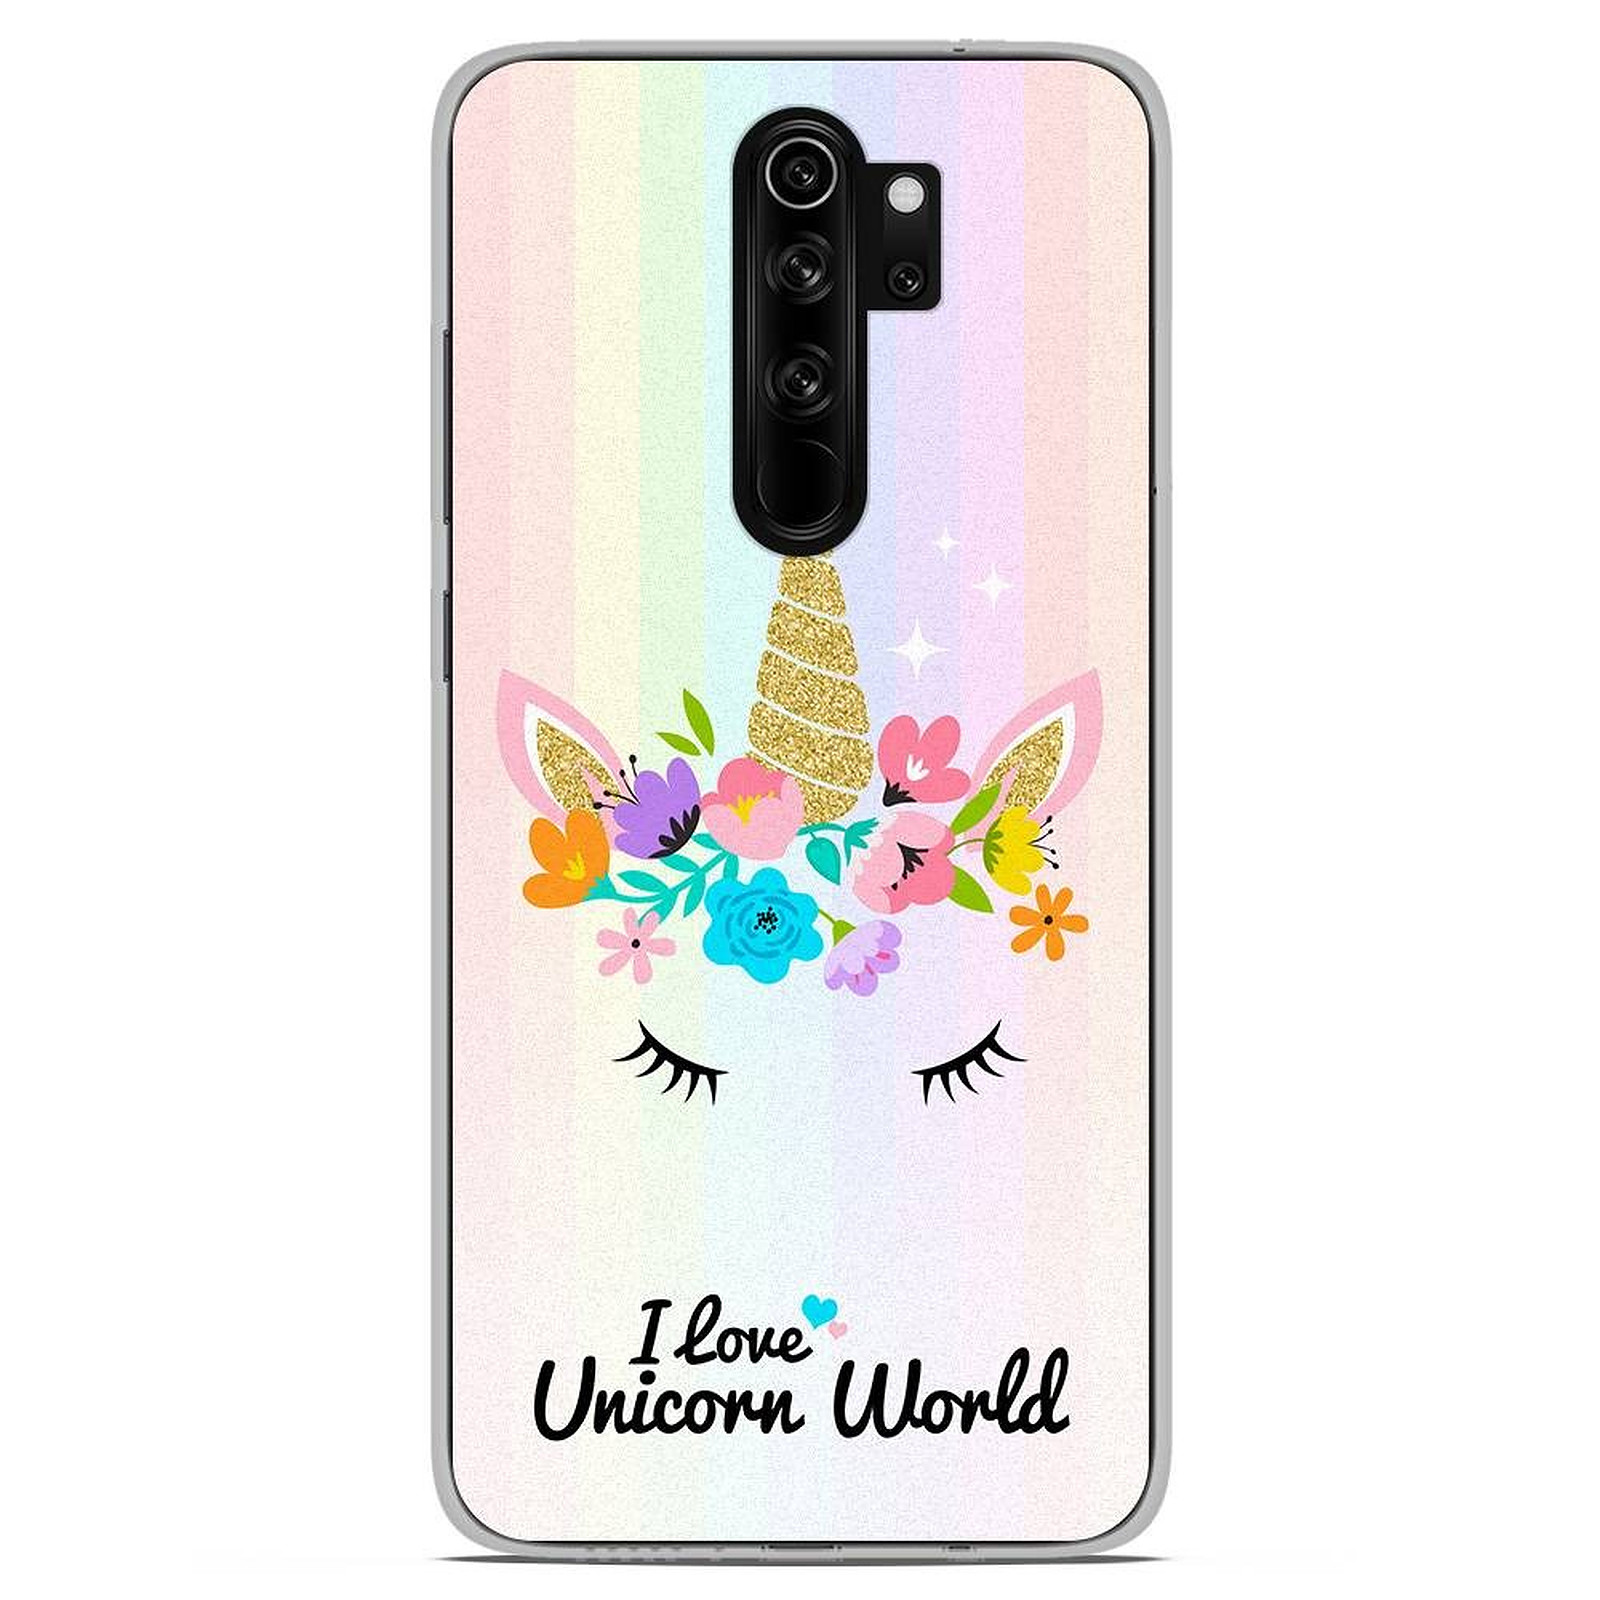 1001 Coques Coque silicone gel Xiaomi Redmi Note 8 Pro motif Unicorn World - Coque telephone 1001Coques